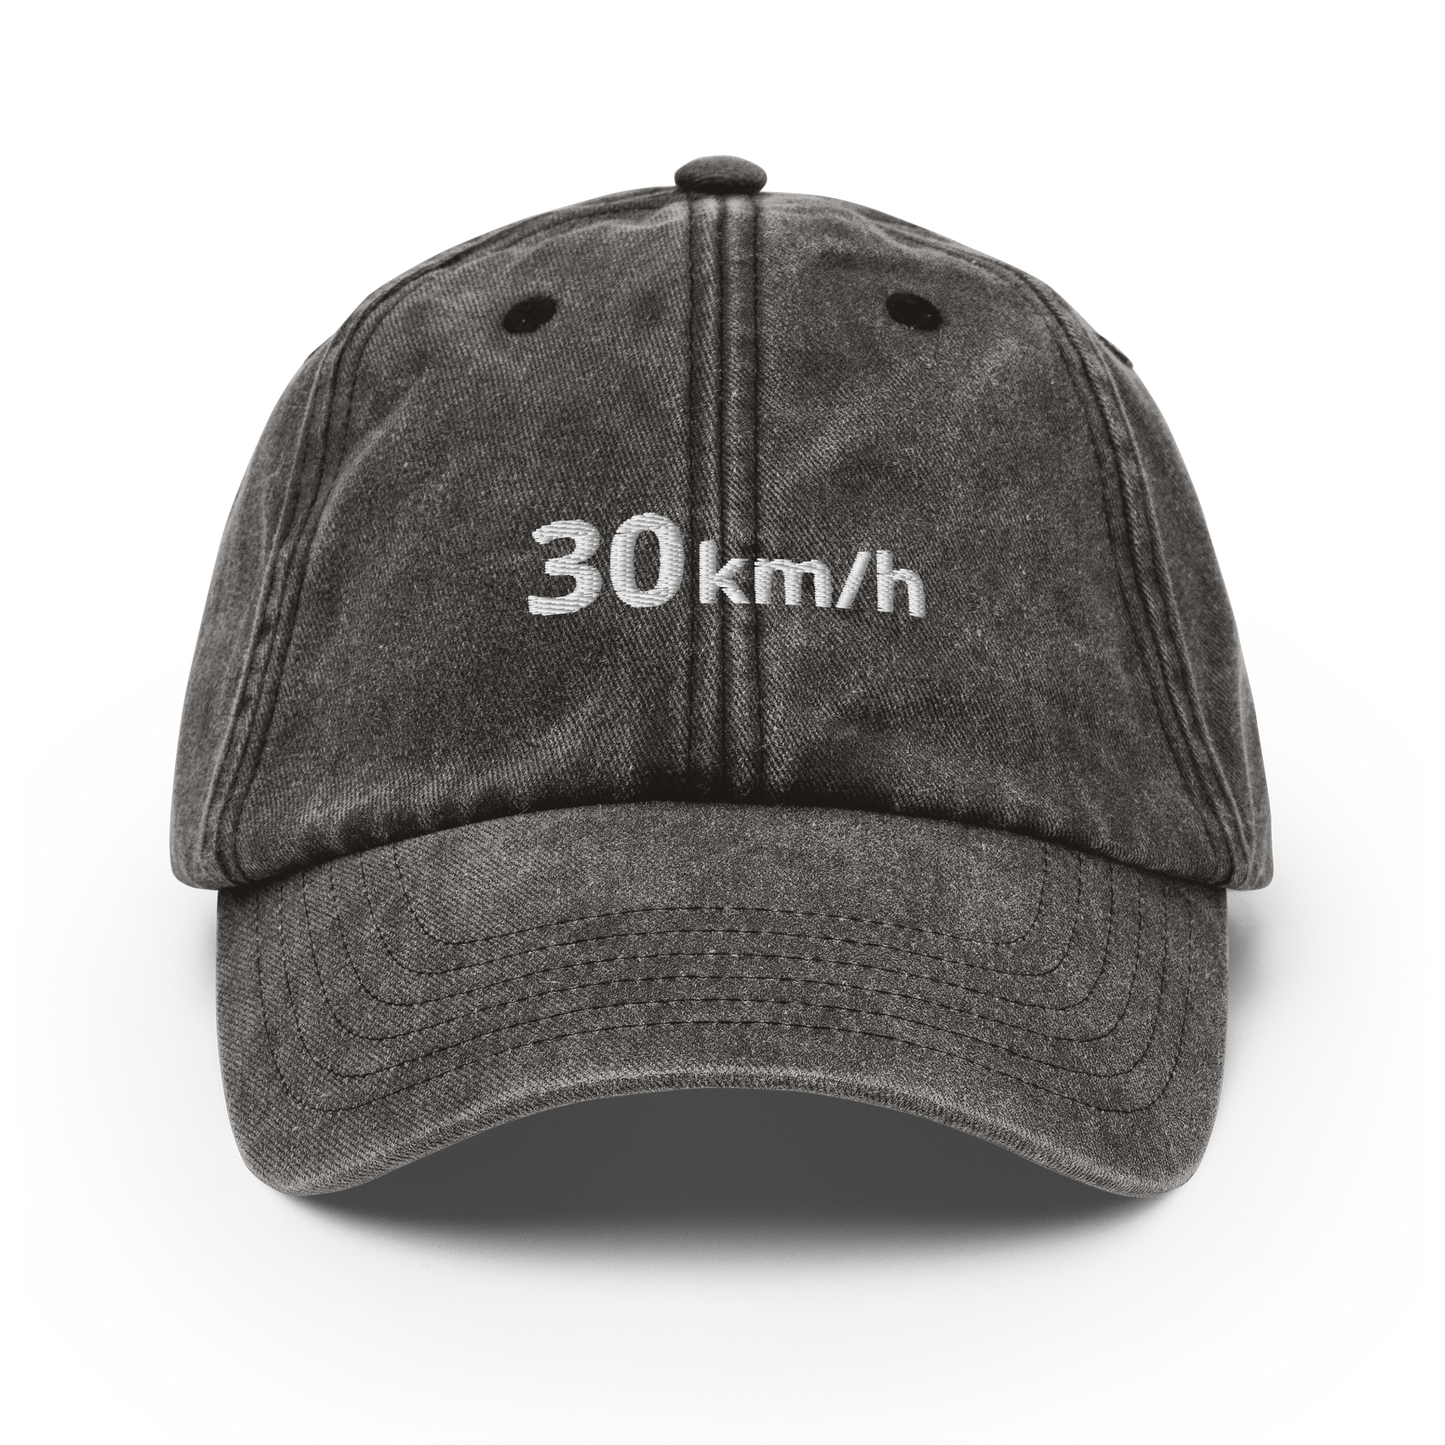 30 km/h - Vintage Hat